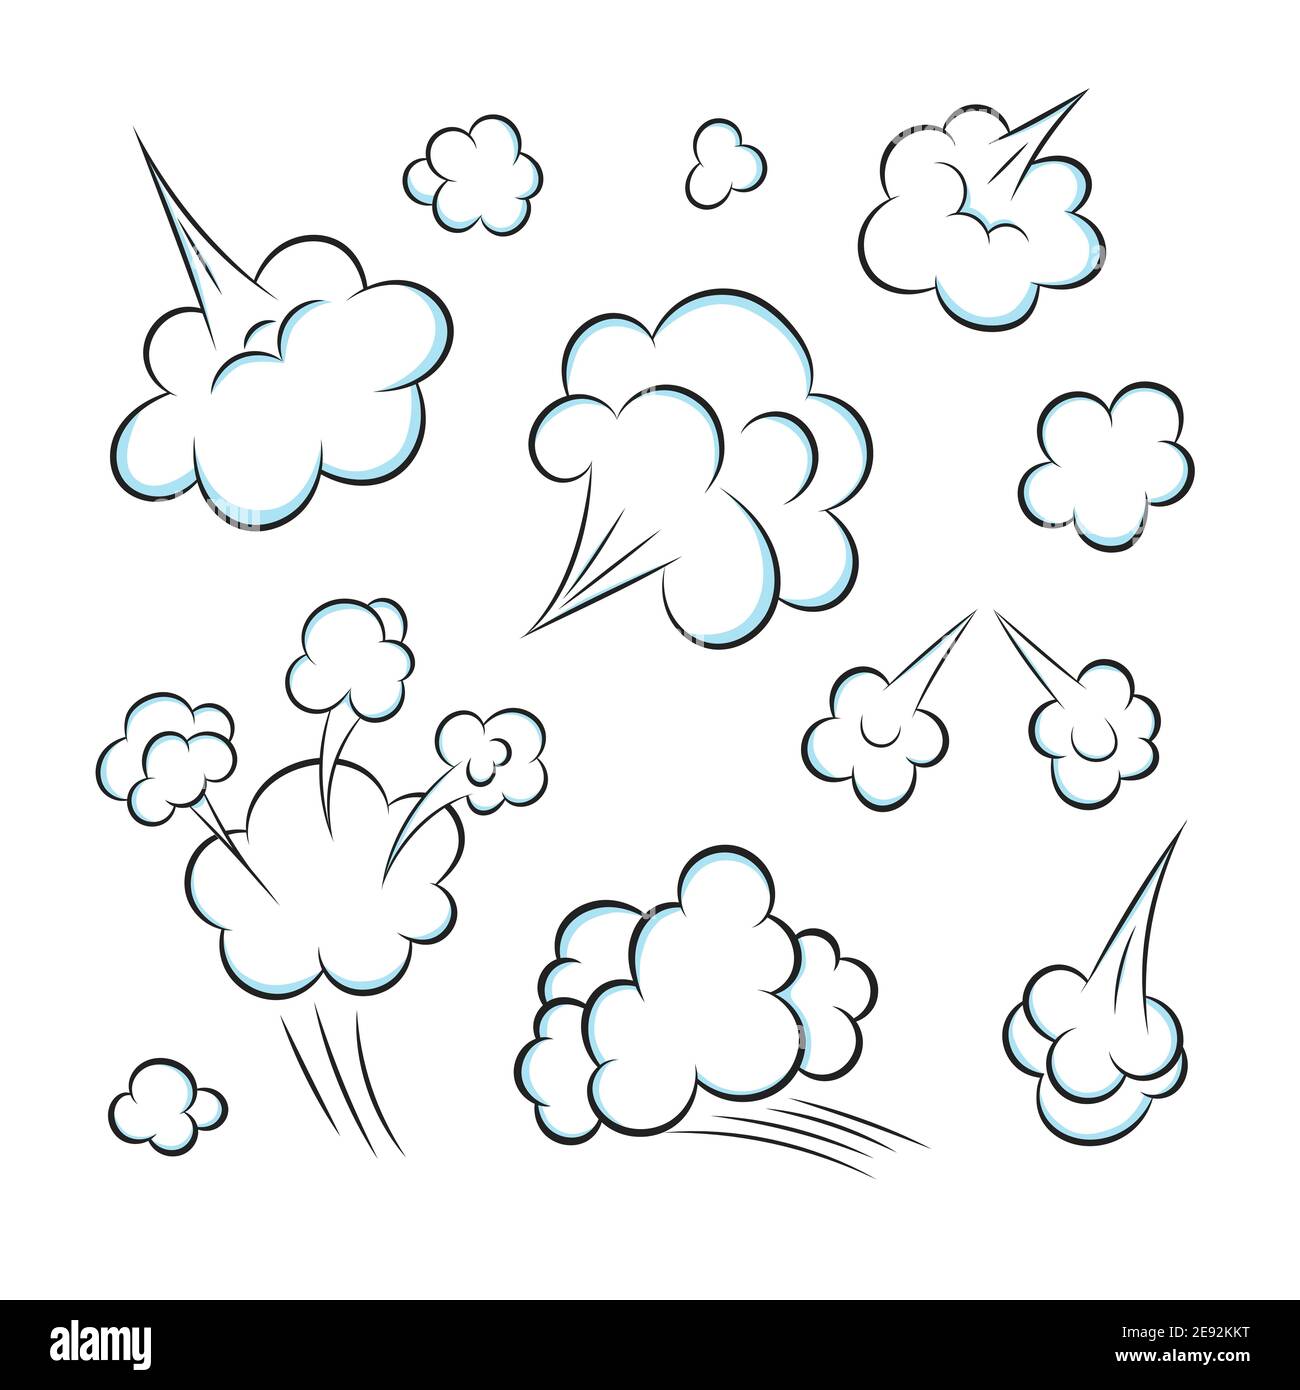 Pop art cómic libro de dibujos animados fart nube de estilo plano diseño vector ilustración conjunto. Mal olor o olor tóxico caricatura humo nube aislada en whi Ilustración del Vector